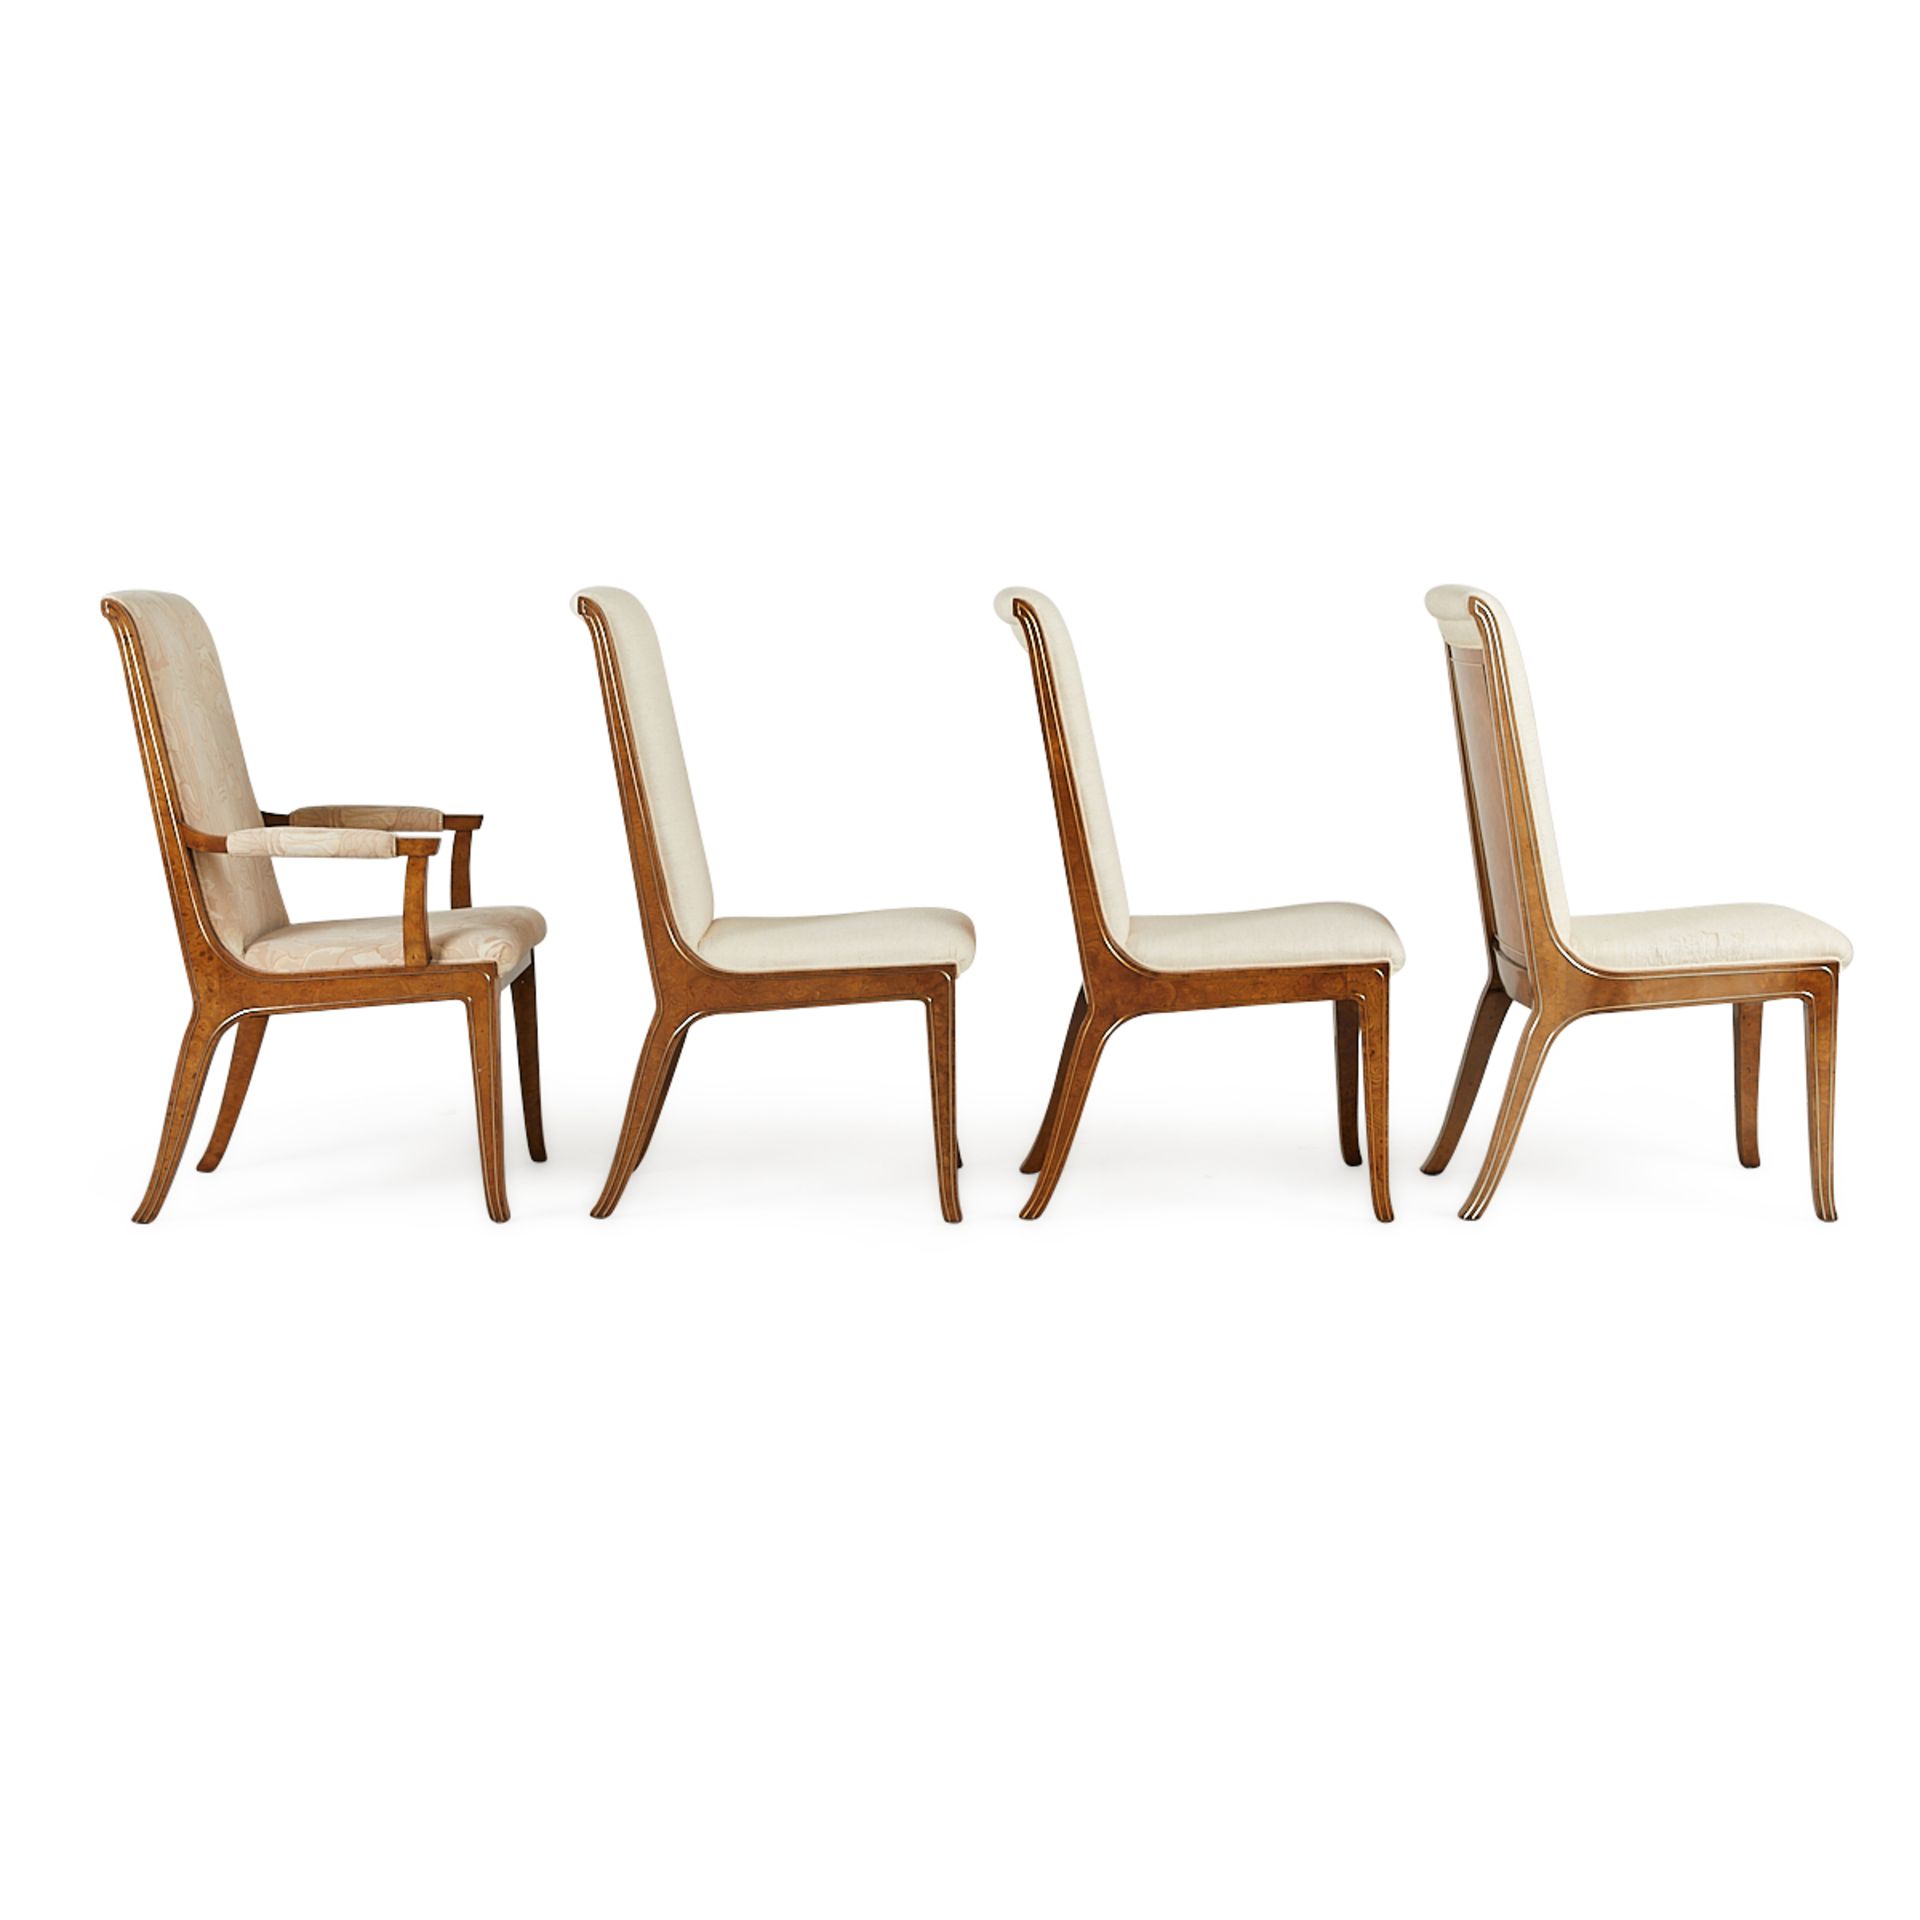 Set 8 Bernhard Rohne MasterCraft Burled Chairs - Image 17 of 24